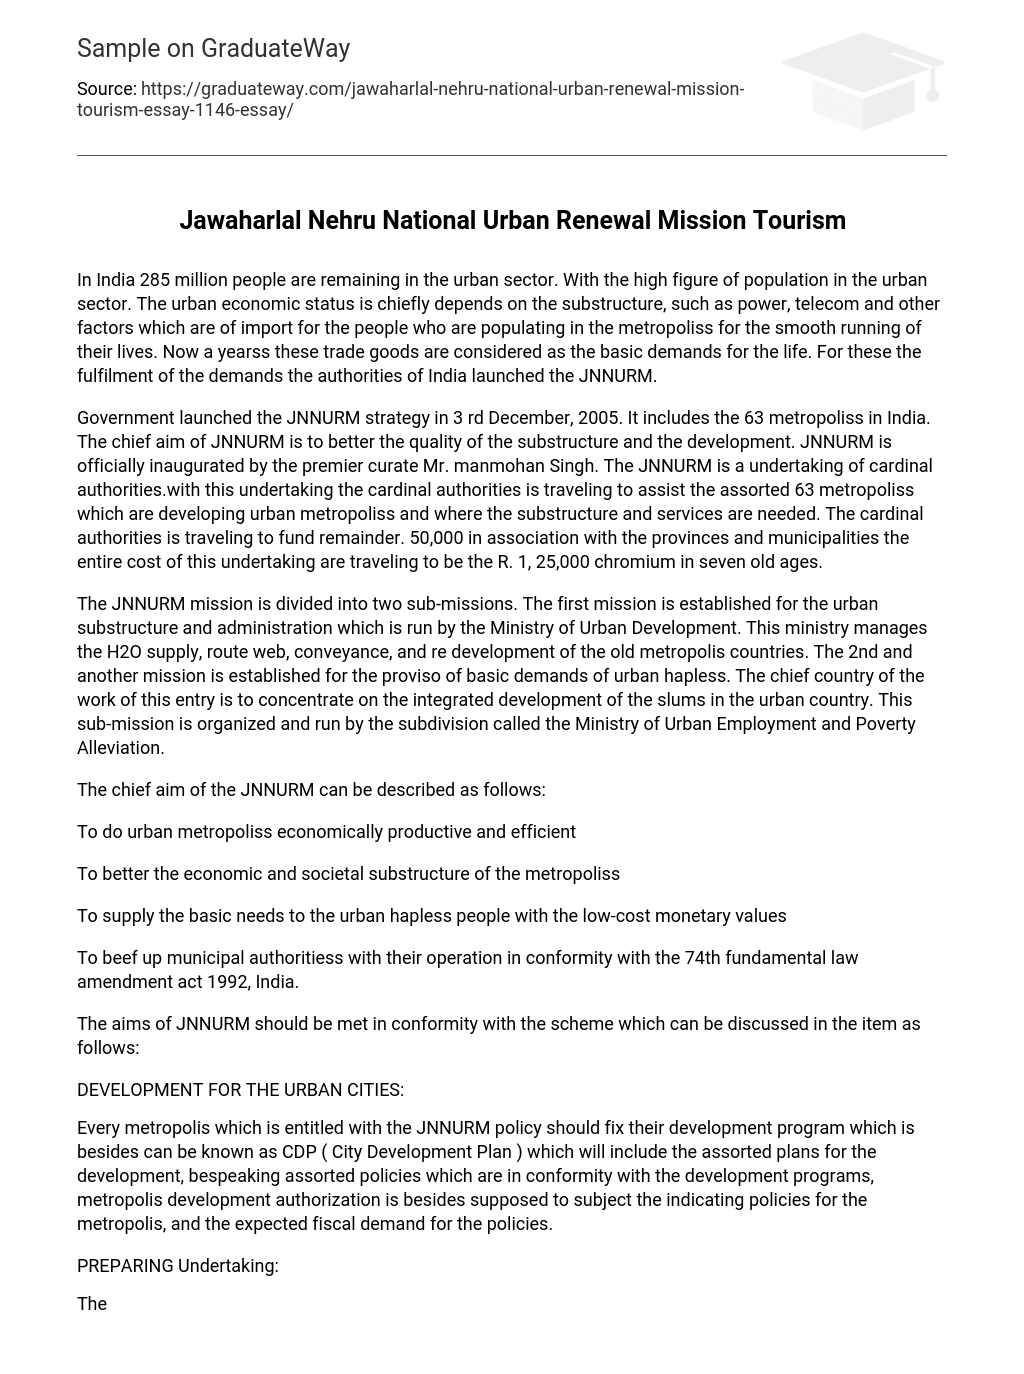 Jawaharlal Nehru National Urban Renewal Mission Tourism